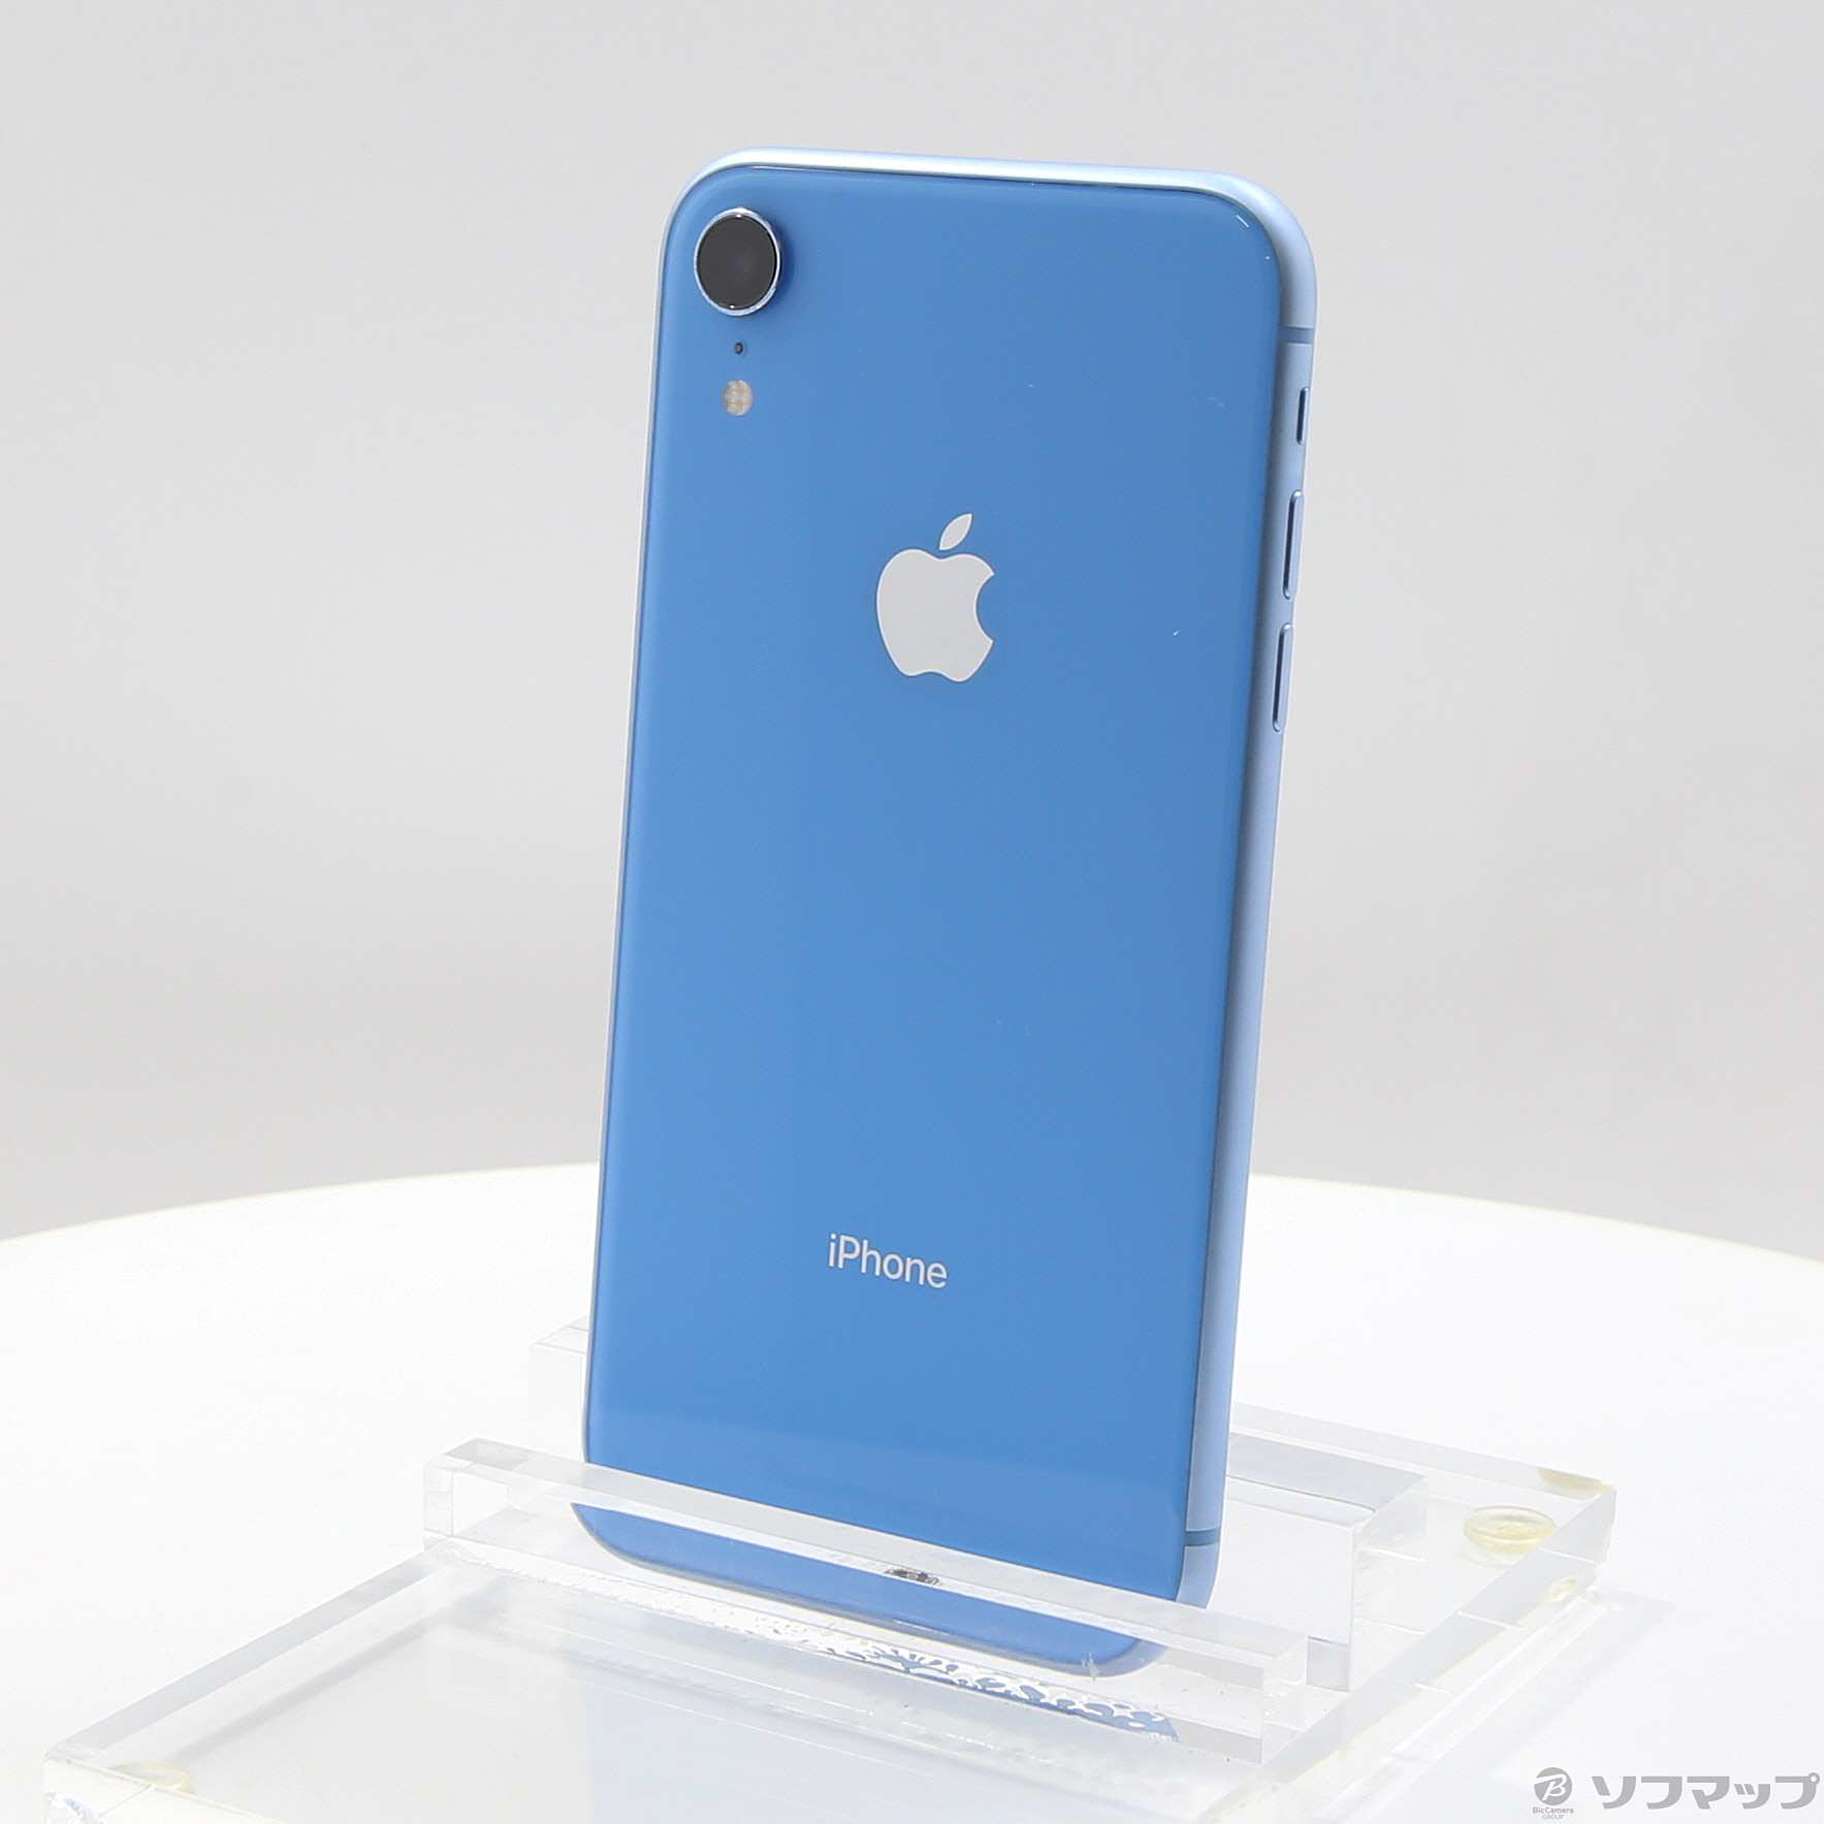 美品】iPhoneXRブルー256GB SIMフリー - スマートフォン本体